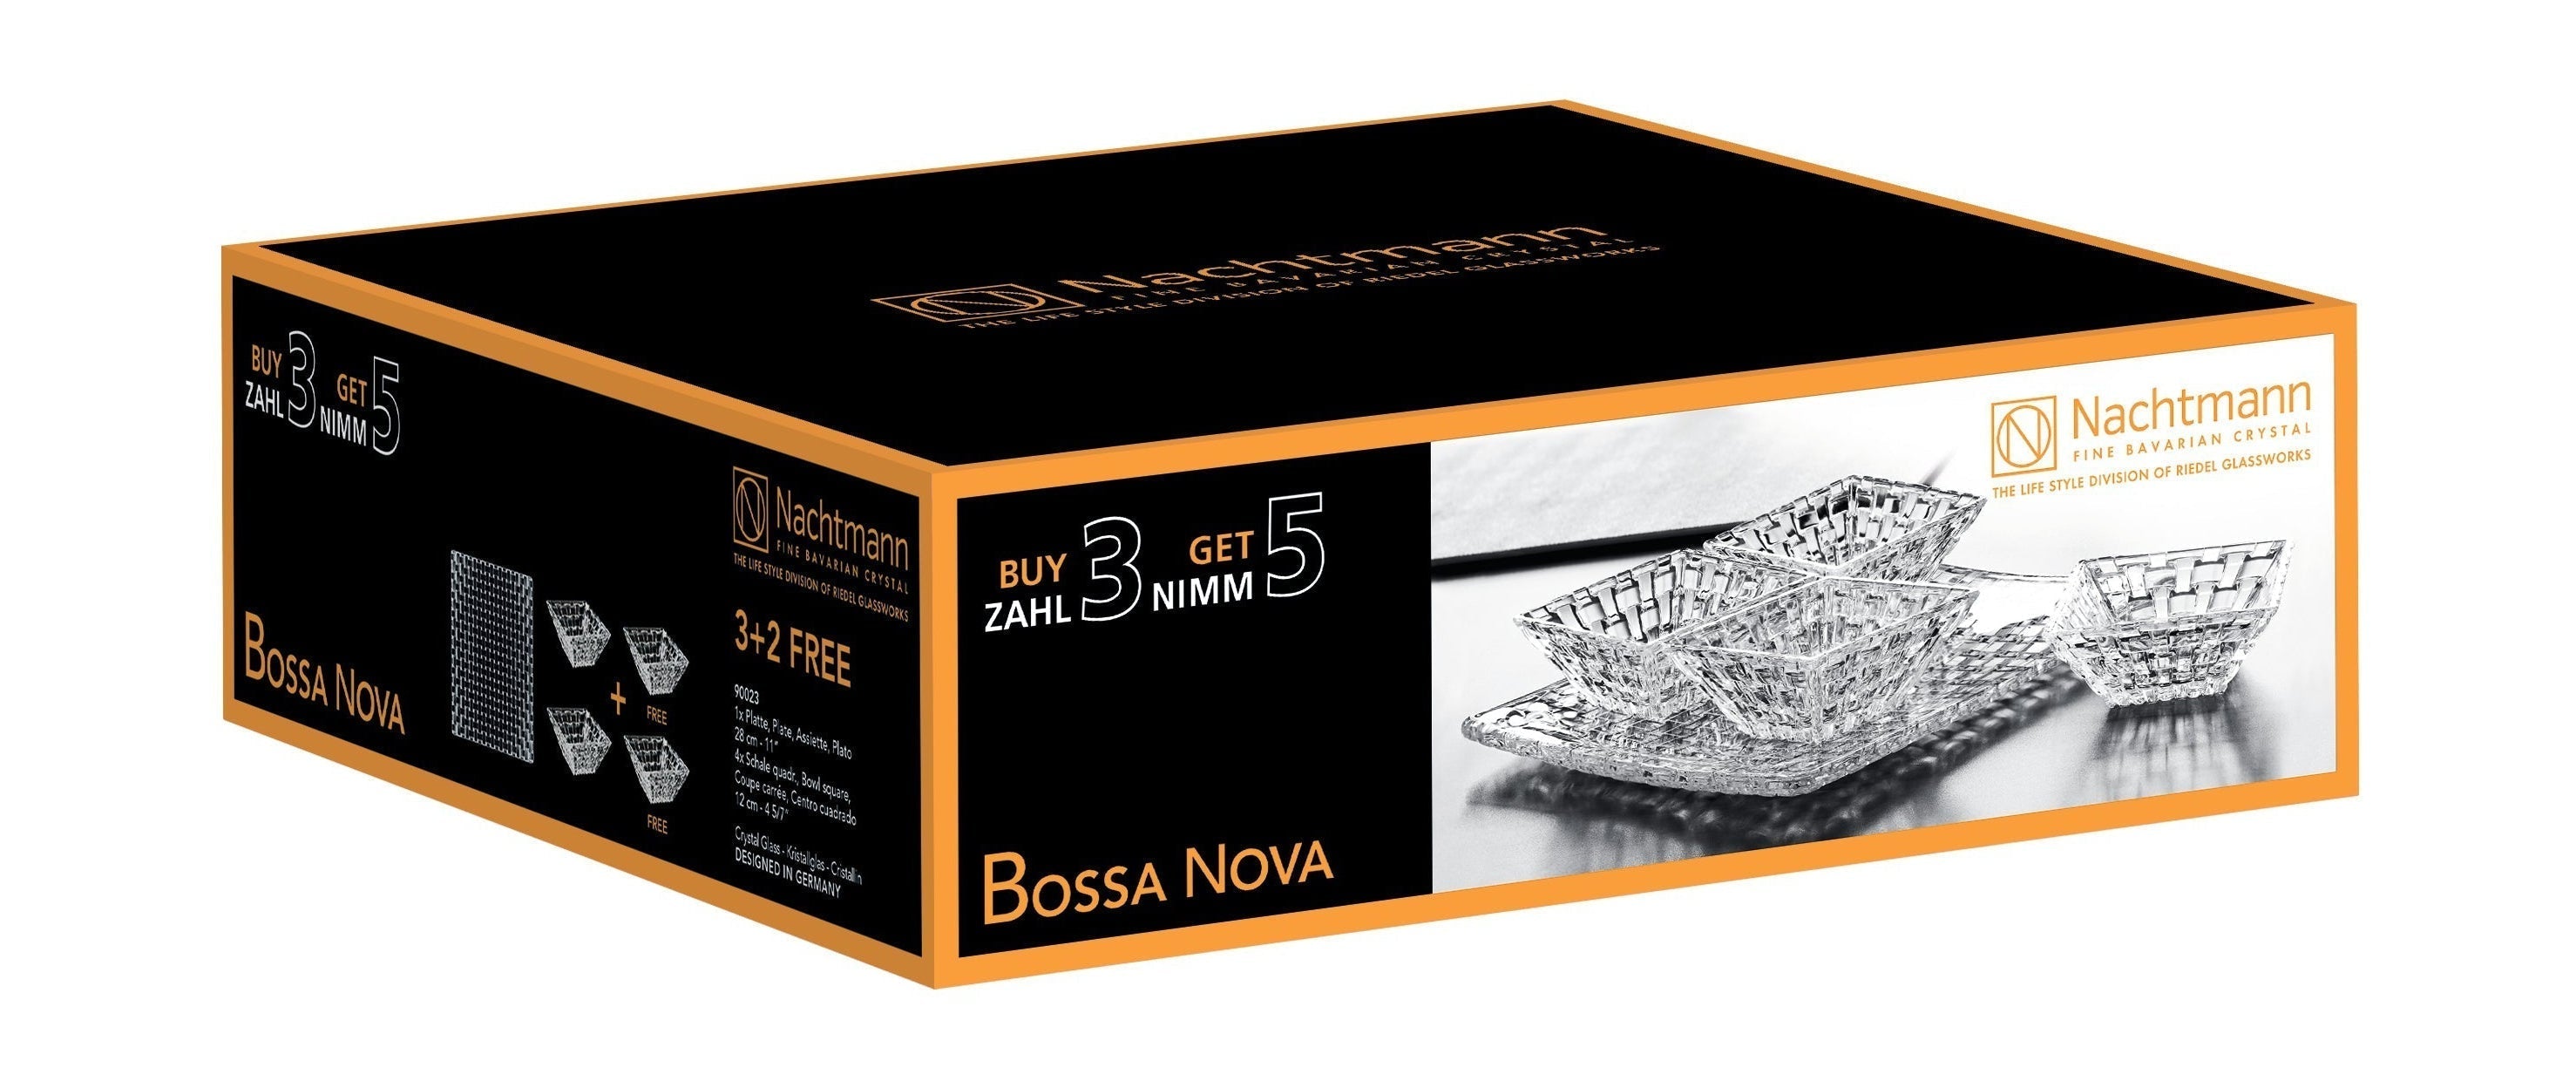 Nachtmann Bossa Nova Teller und Schüssel Advantage Set, Satz von 5